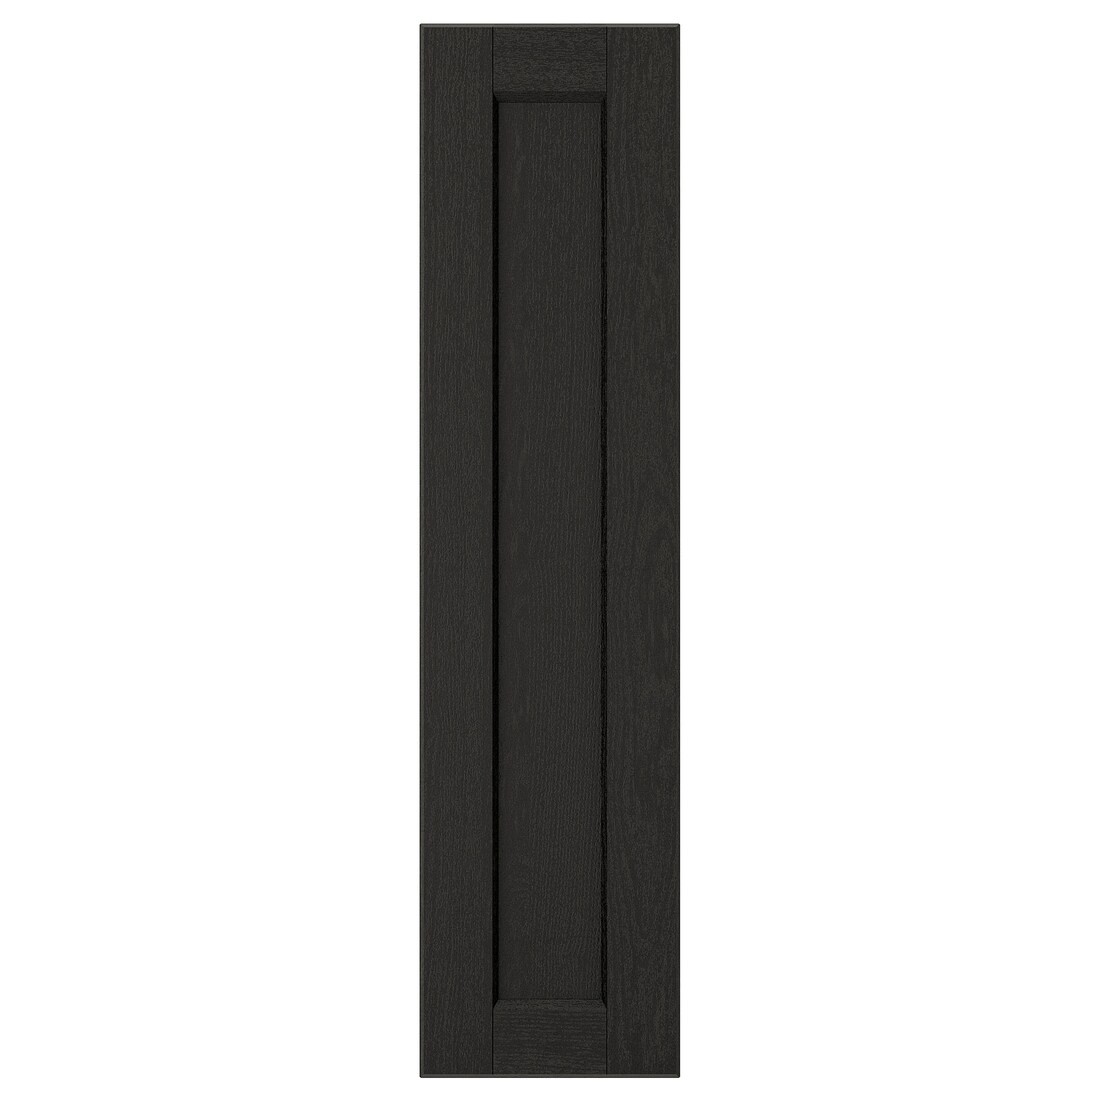 IKEA LERHYTTAN ЛЕРХЮТТАН Дверь, черная морилка, 20x80 см 30356051 | 303.560.51